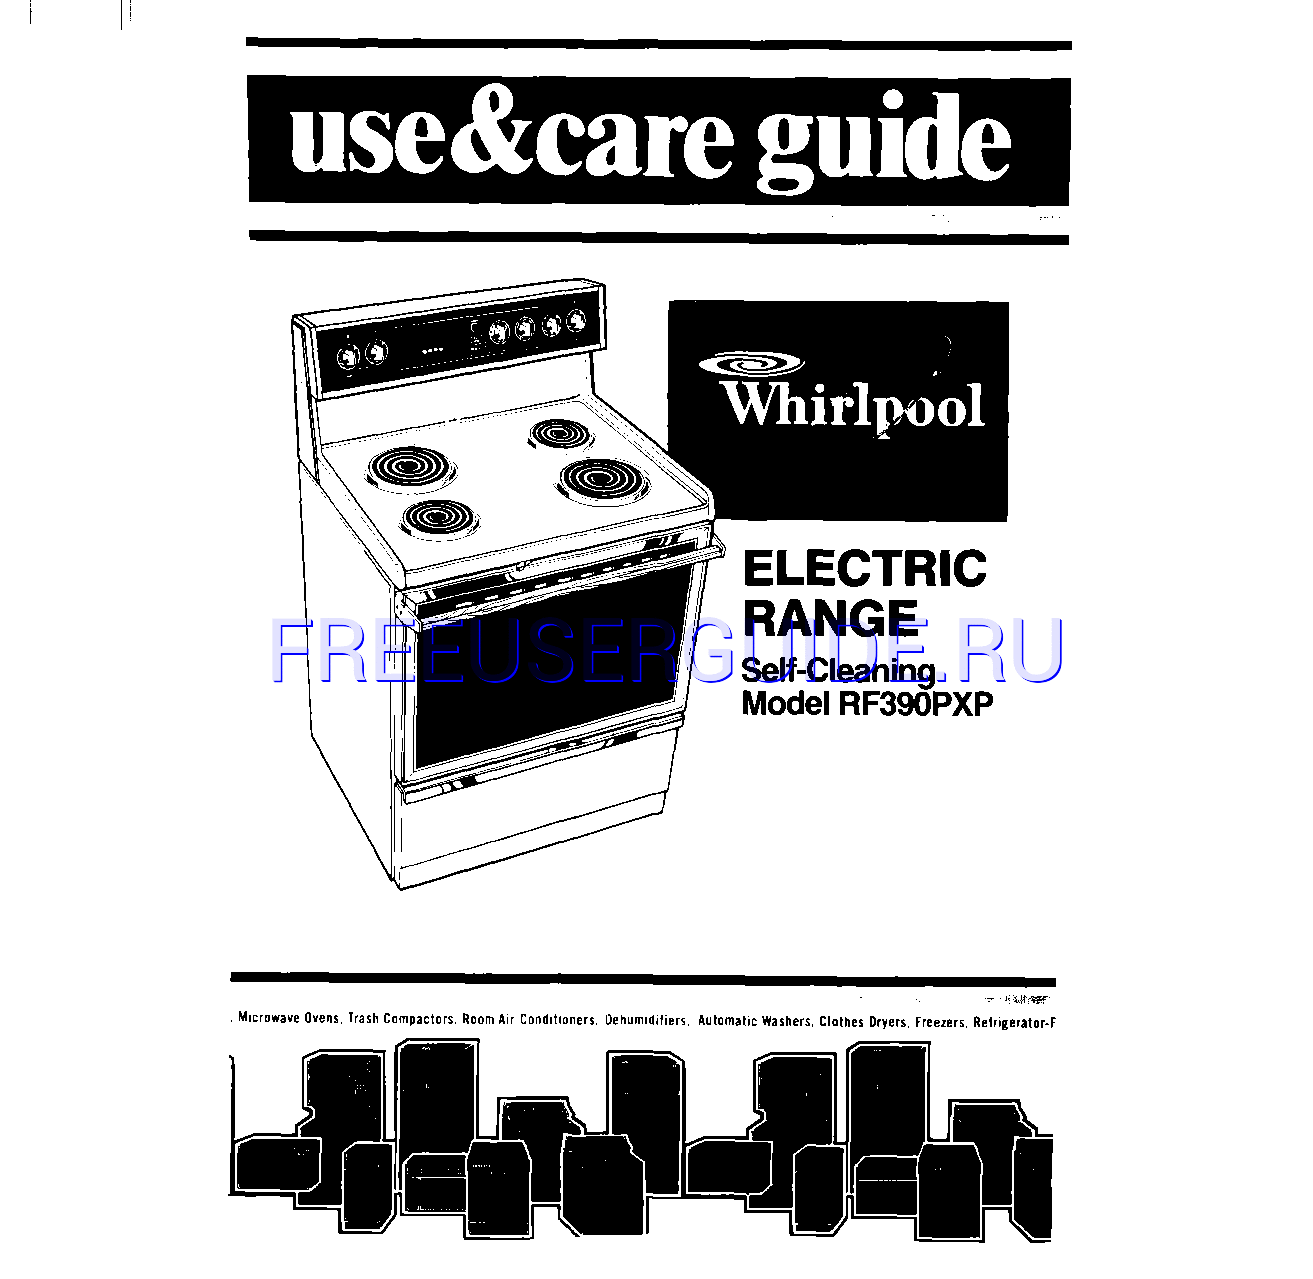 Leer online Manual de usuario para Whirlpool RF390PXP (Page 1)